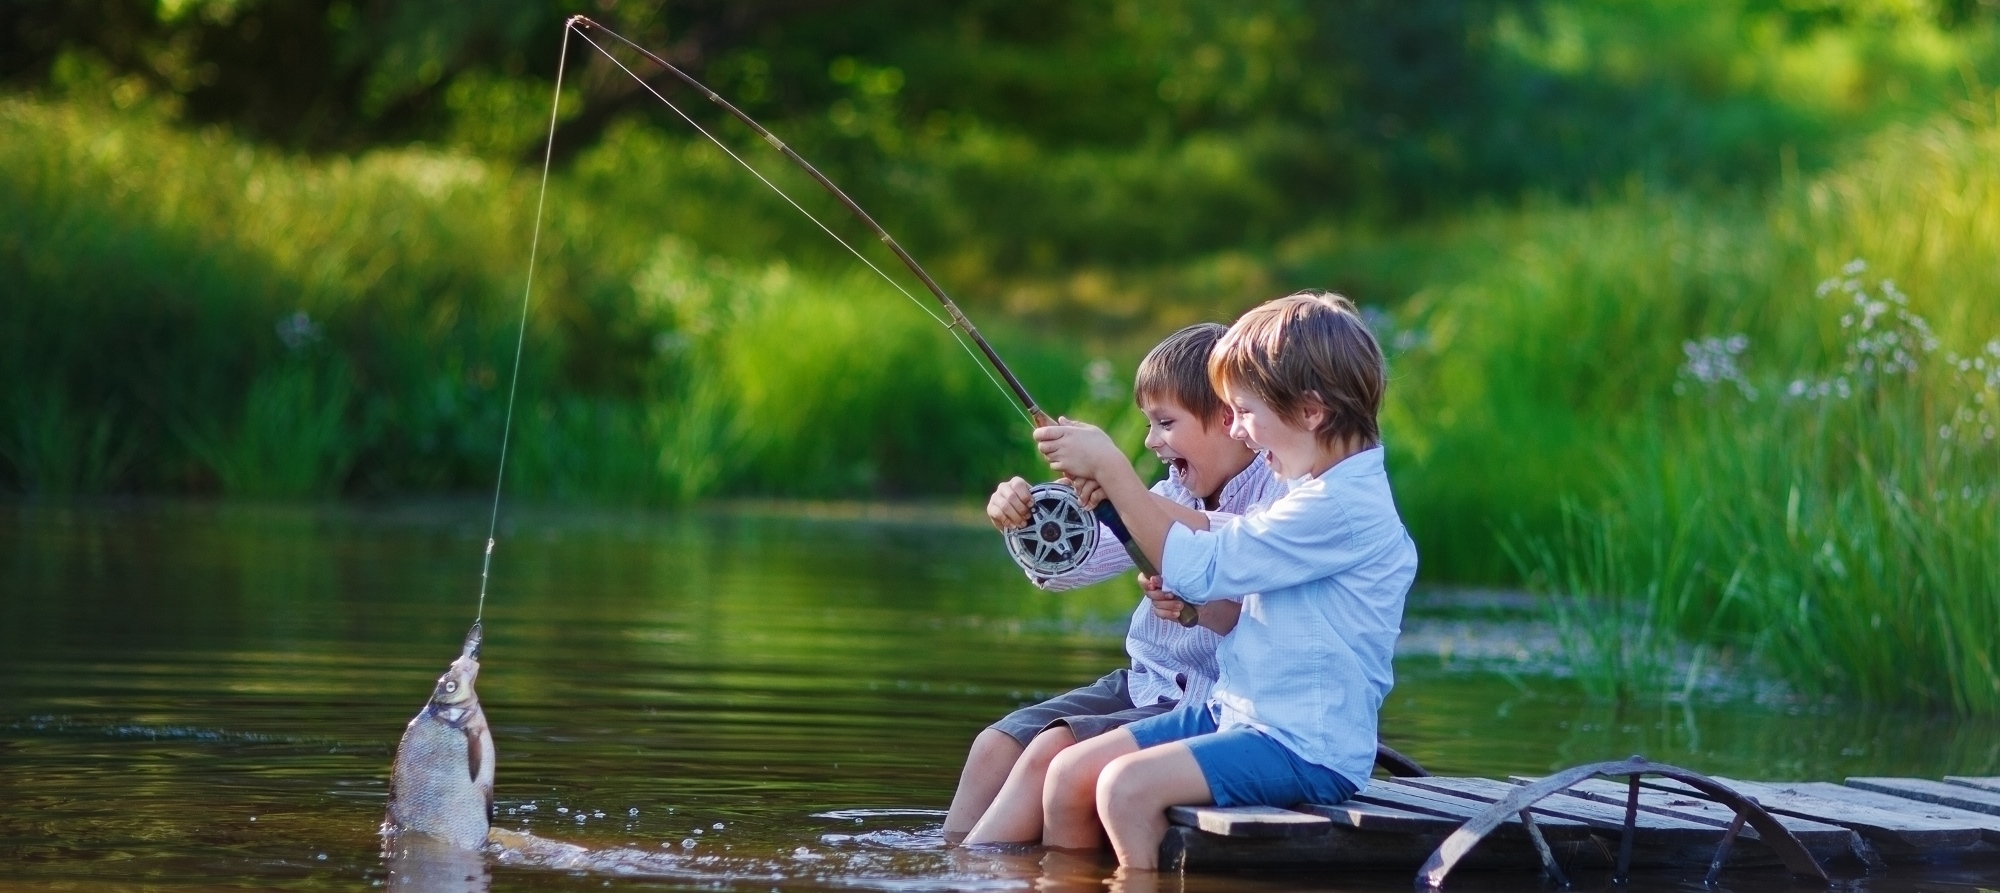 Мальчик с удочкой. Рыбалка. Дети на рыбалке. Ловля рыбы.